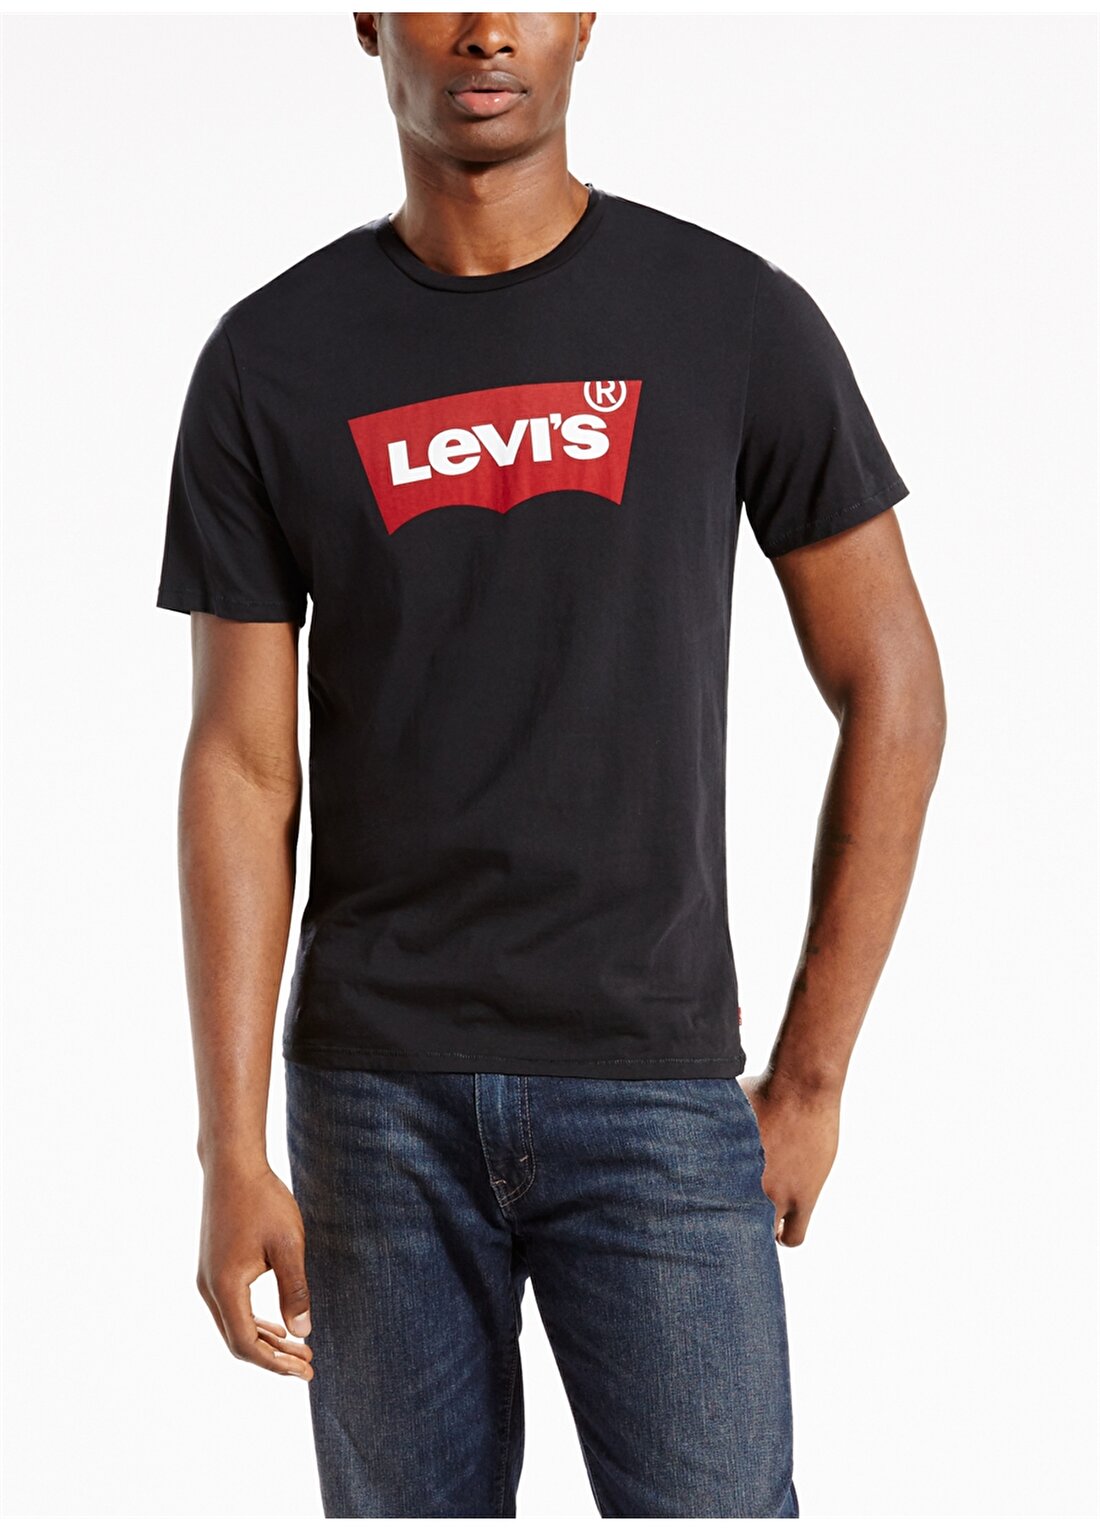 Levis 17783-0137 Graphic Setin Neck Graph T-Shirt